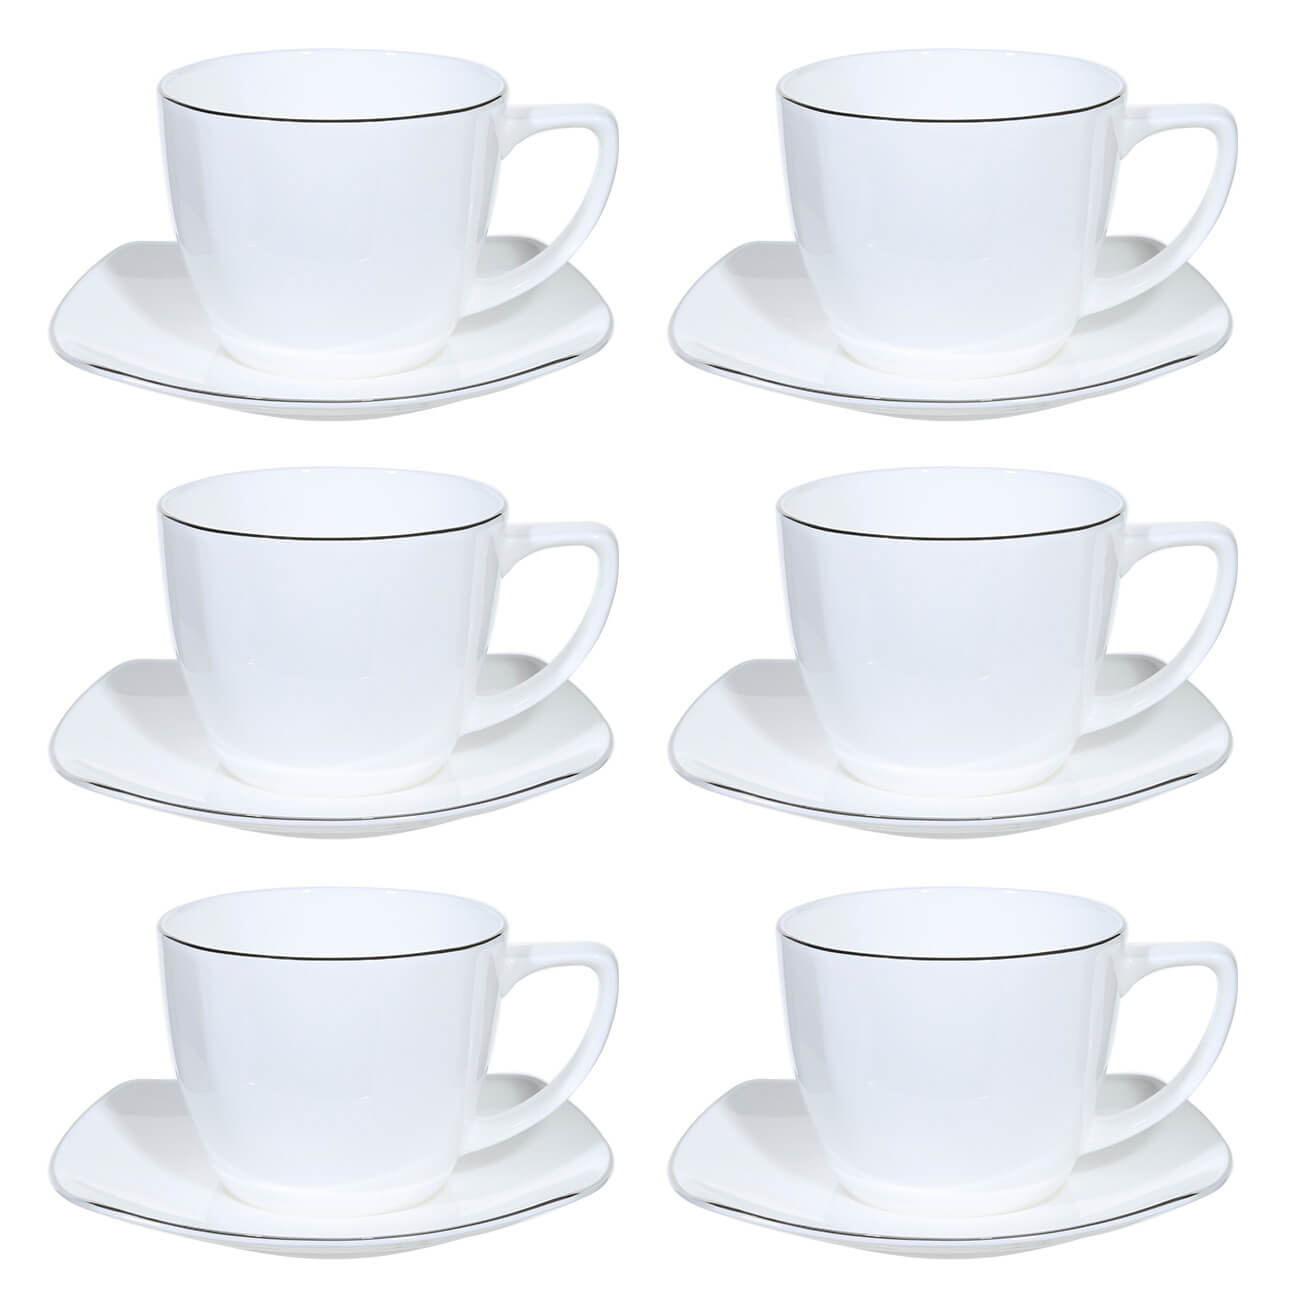 Пара чайная, 6 перс, 12 пр, 240 мл, фарфор F, Iceberg пара чайная 2 перс 4 пр 250 мл фарфор f antarctica